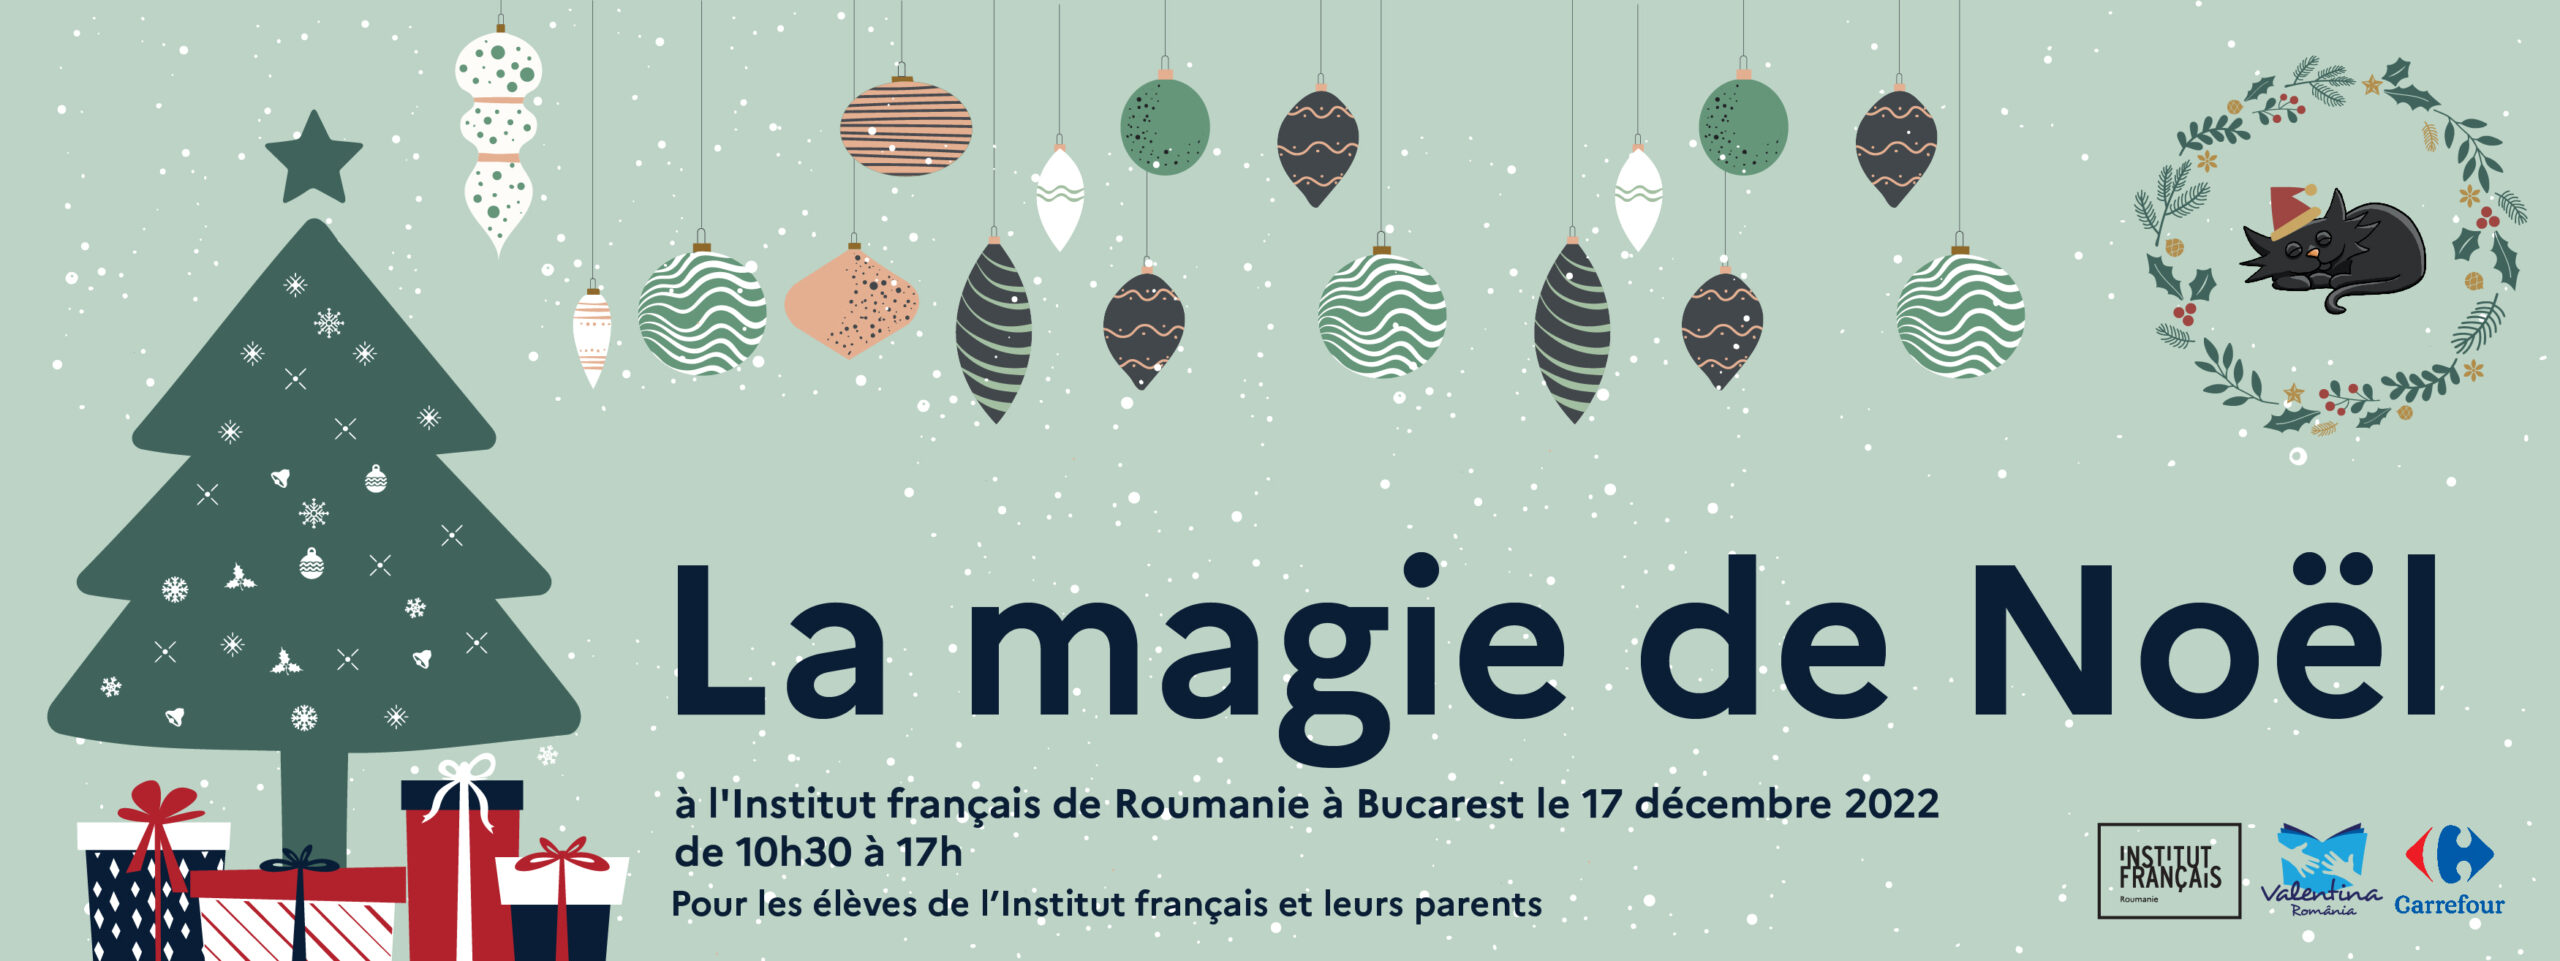 La magie de Noël 🎅 à l'Institut français de Roumanie à Bucarest